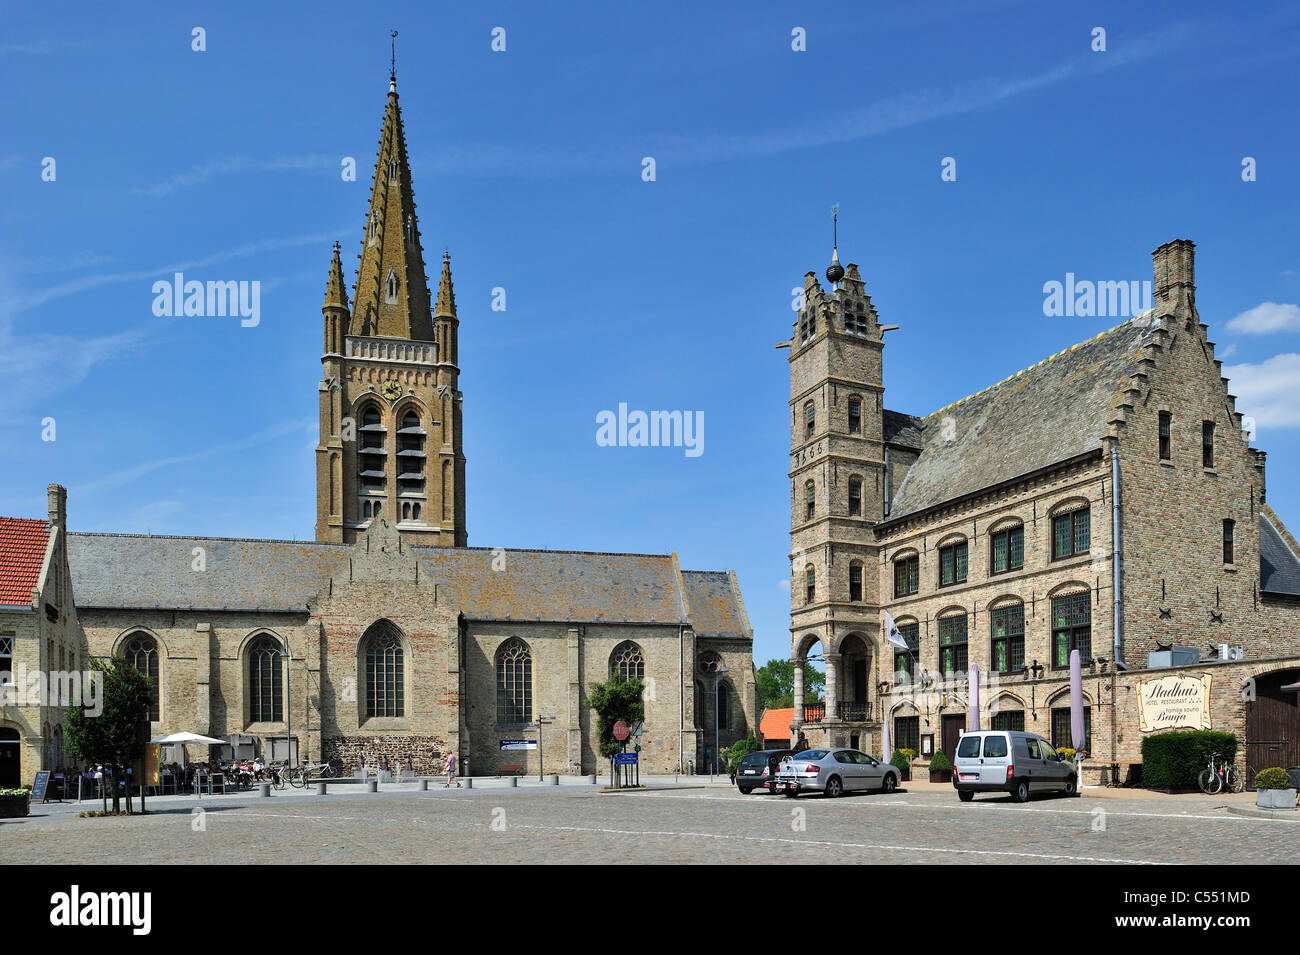 L'église Saint Pierre et l'ancien hôtel de ville avec beffroi de Lo, Lo-Reninge, Belgique Banque D'Images